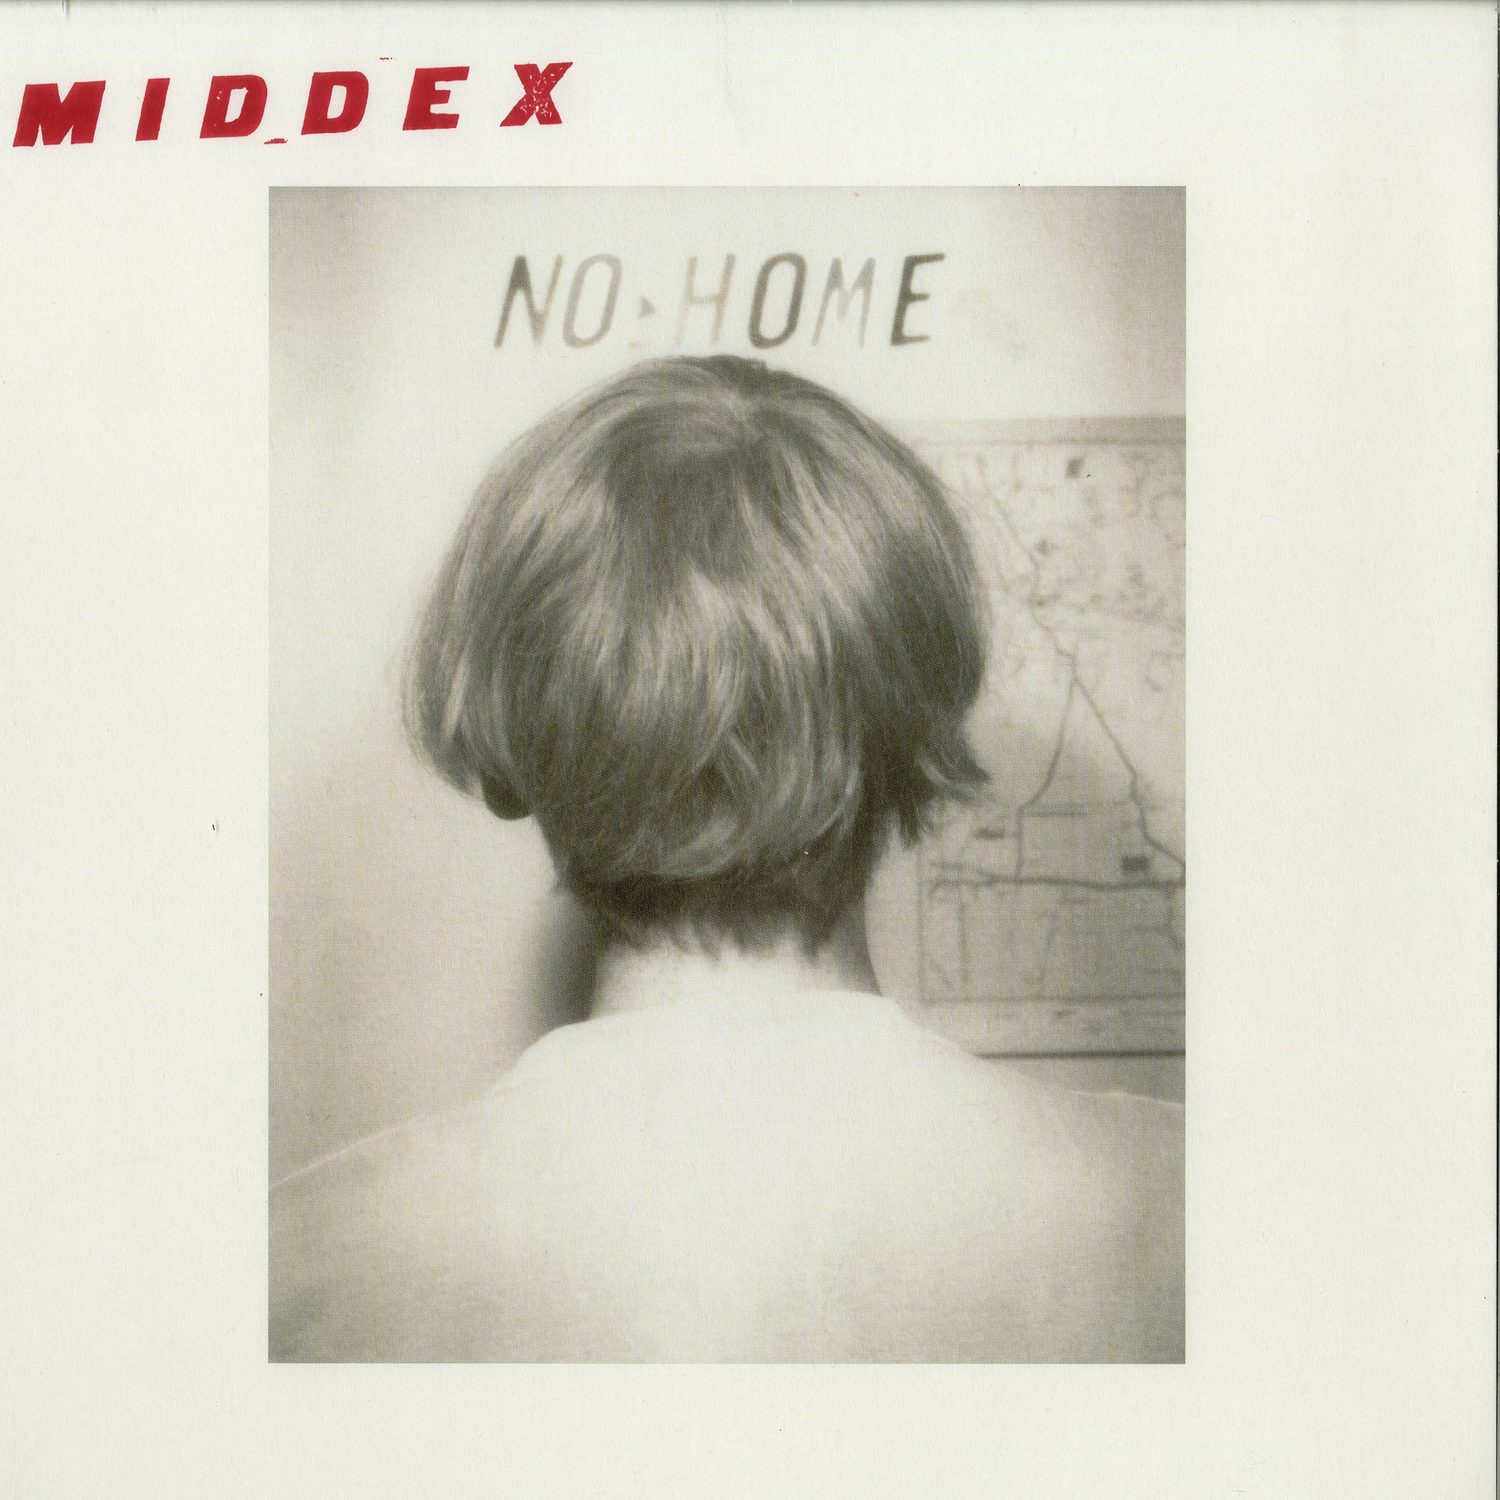 Middex - NO HOME 